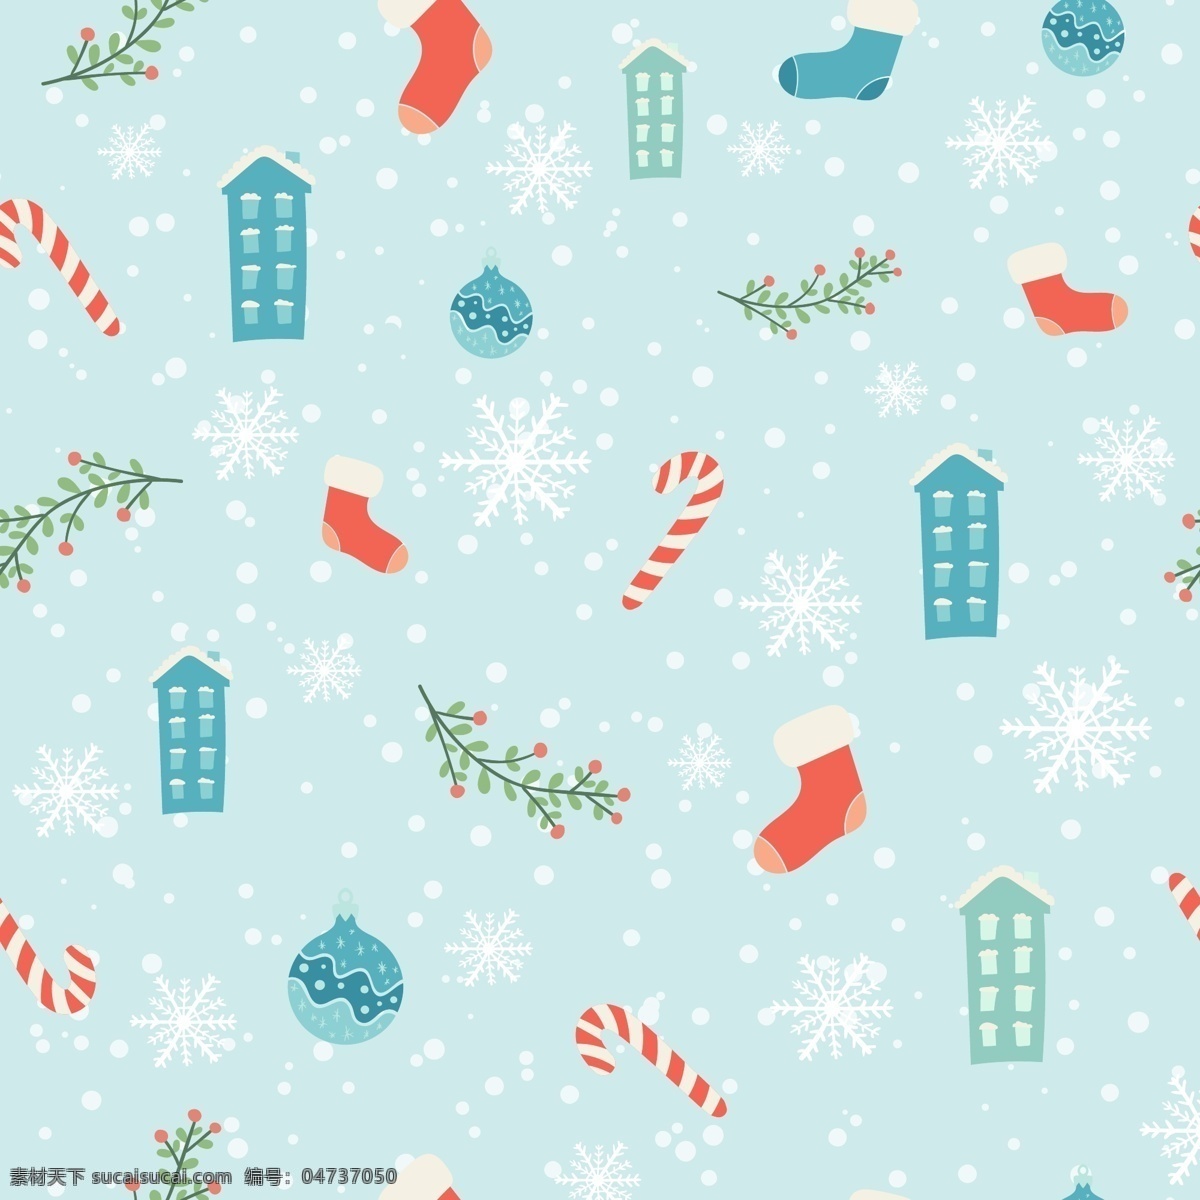 蓝色 圣诞 卡通 矢量 合集 环保 可爱 矢量素材 糖果杖 排列 简约 平面素材